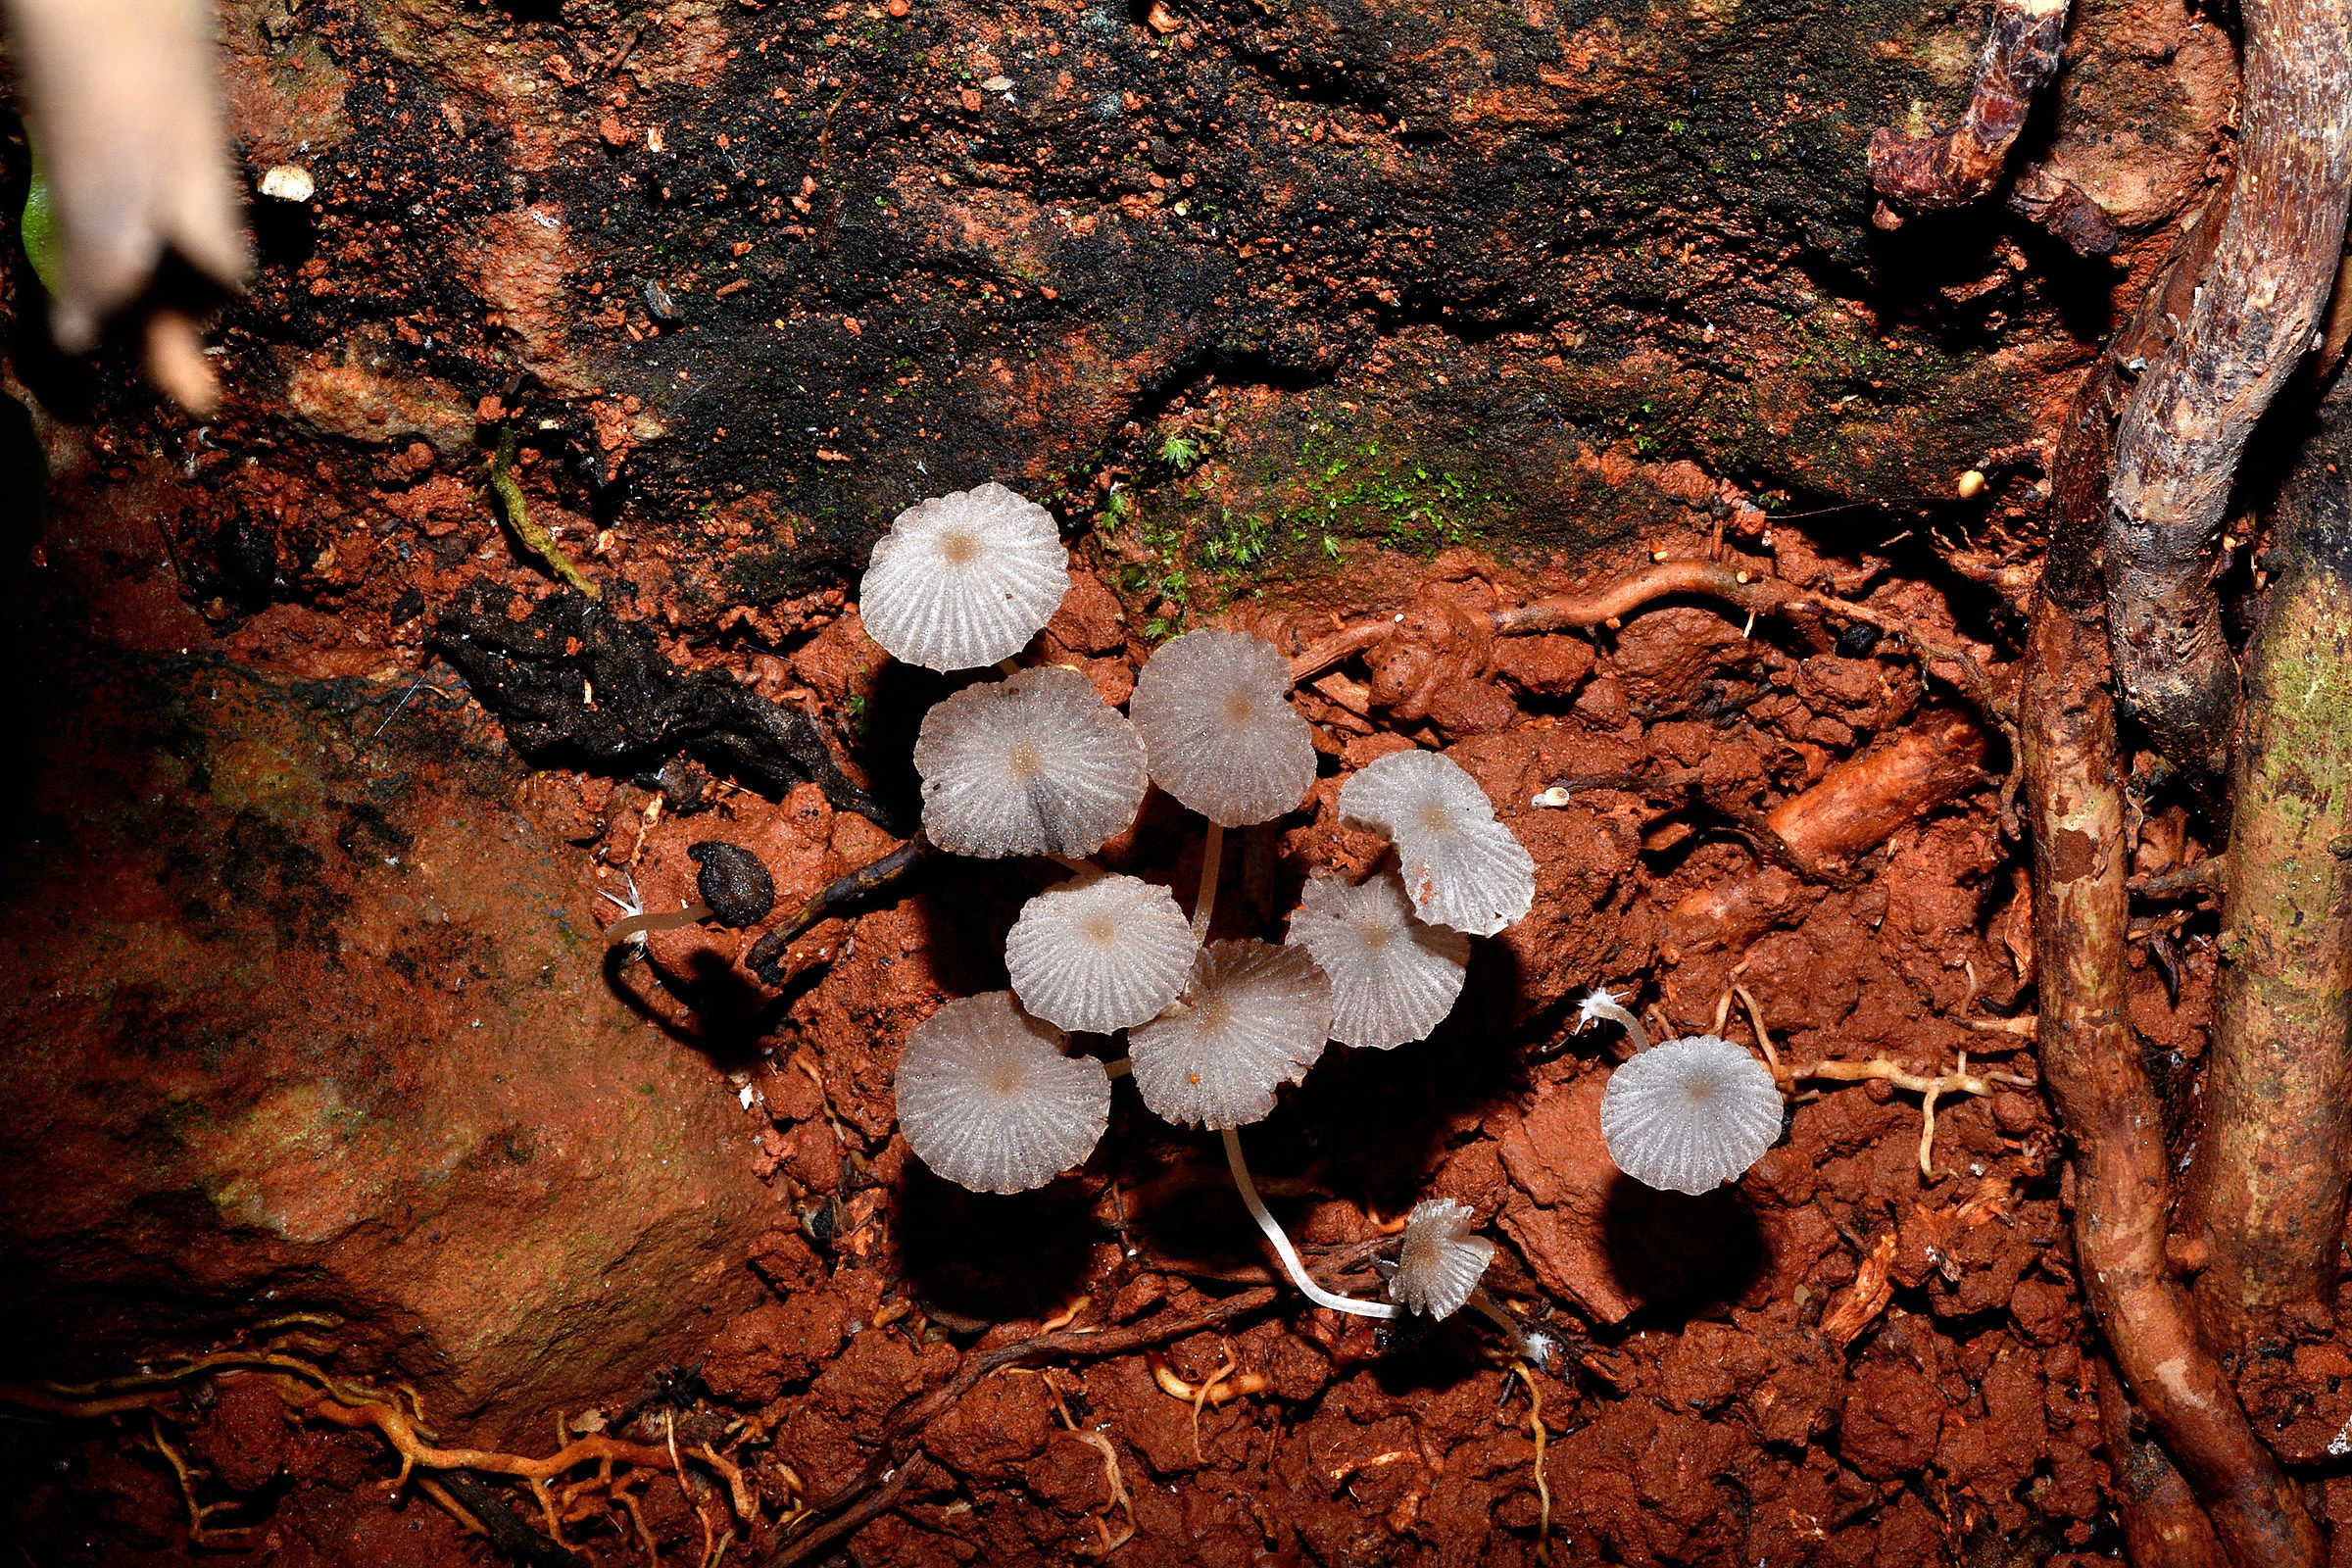 Fungi on the Brazilian reddish soil...